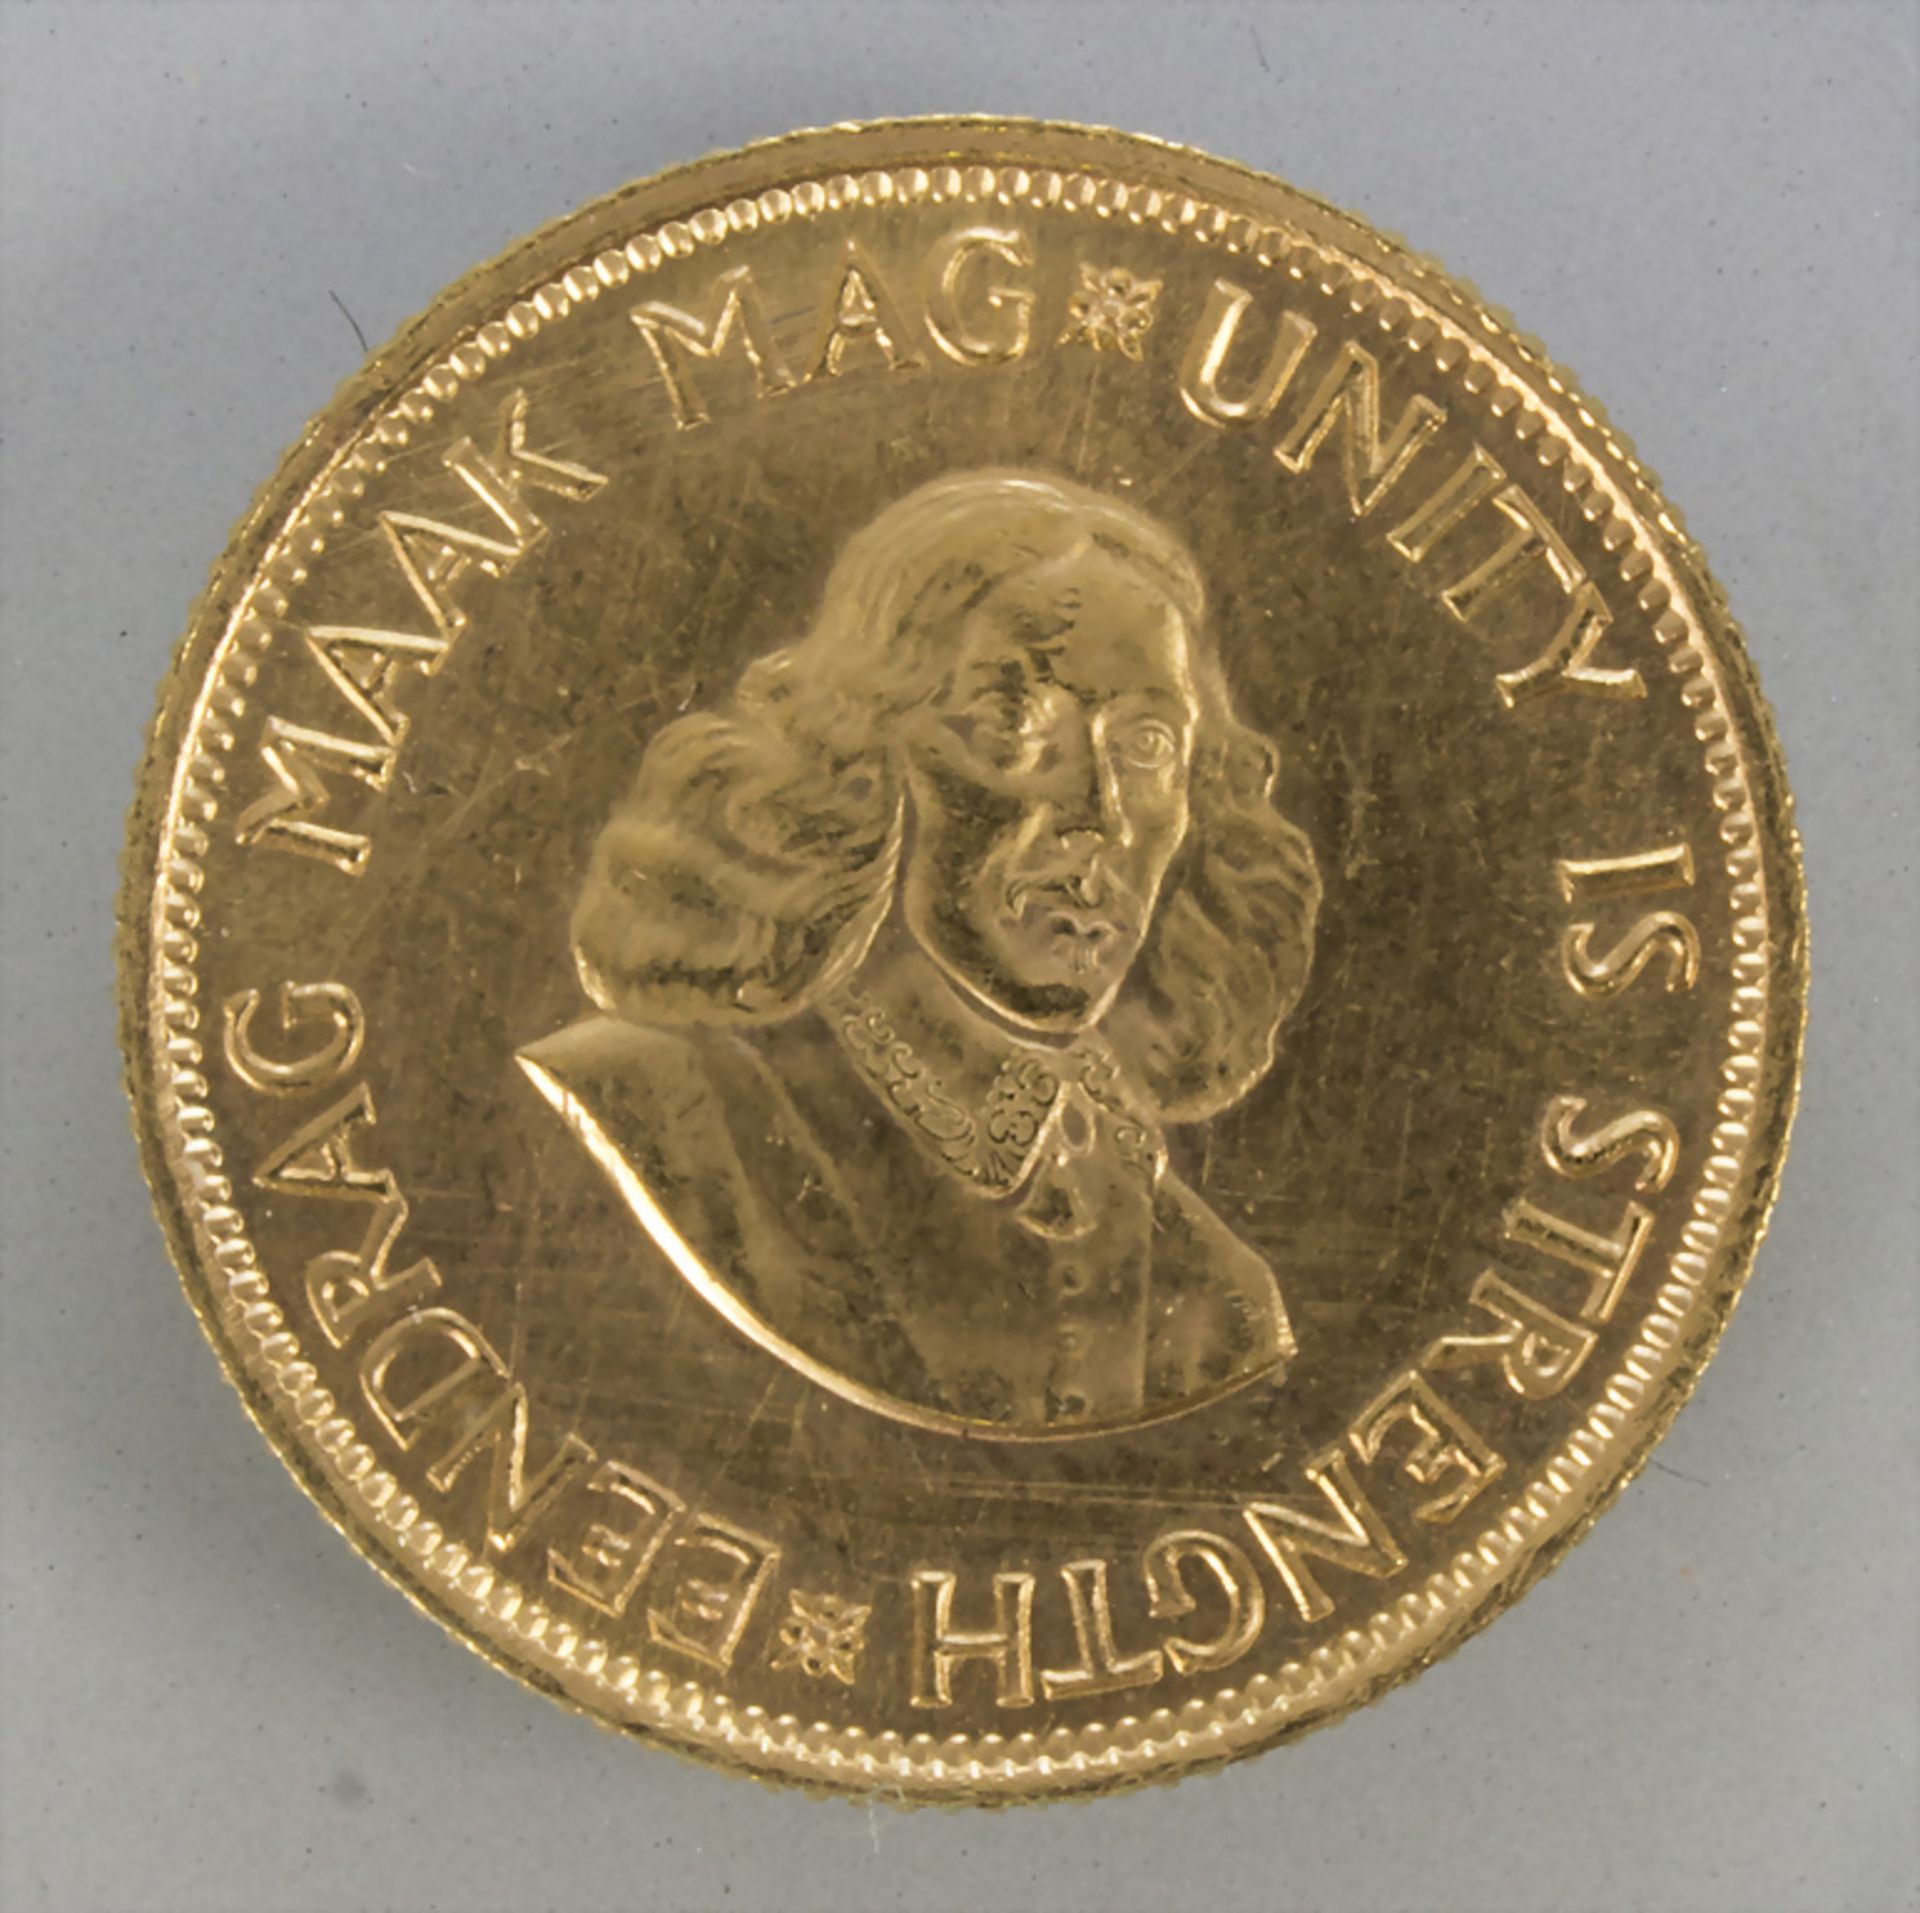 Goldmünze, Südafrika, 2 Rand, 1962 / A gold coin, South Africa, 2 rand, 1962